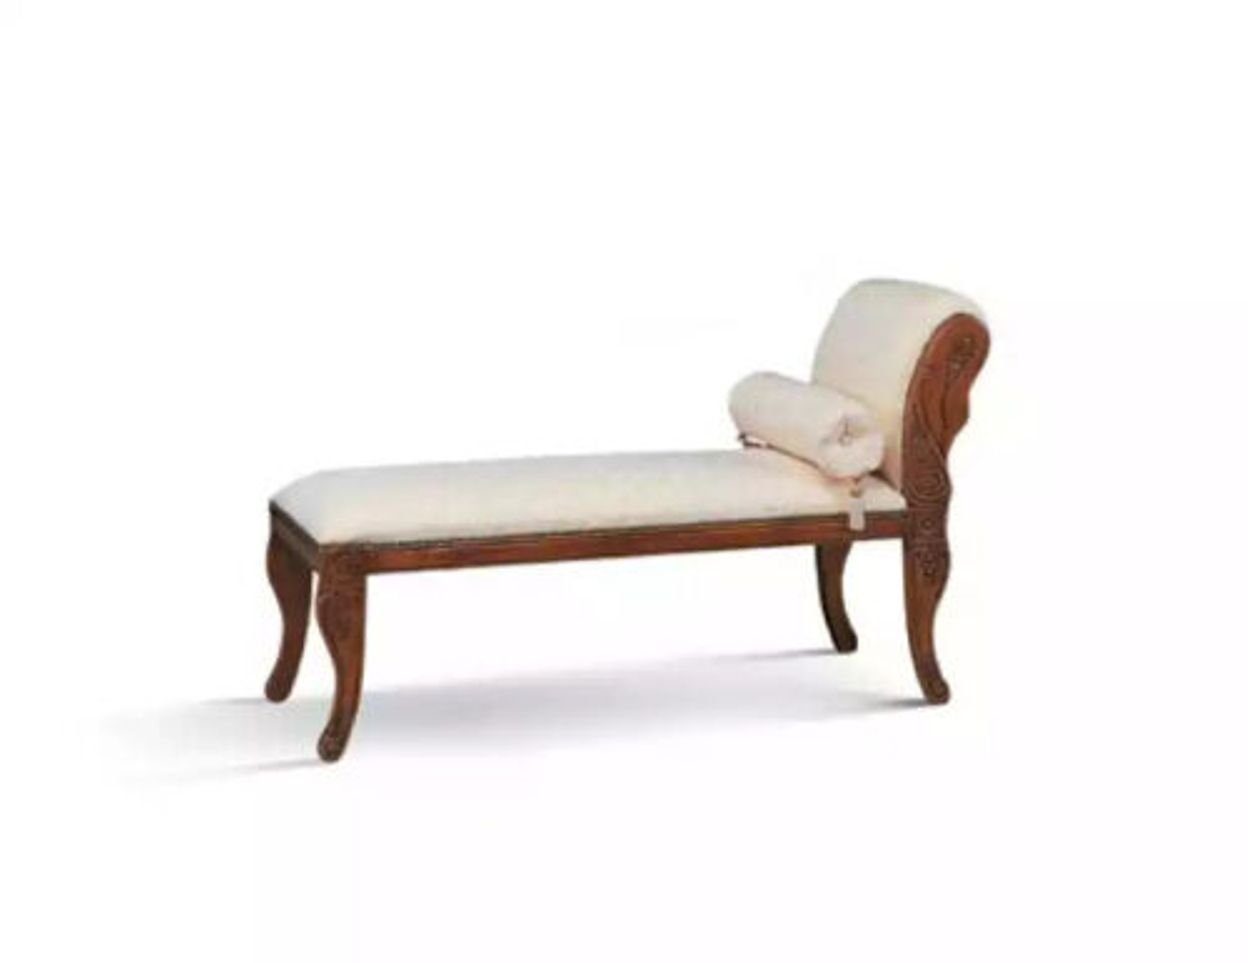 Italy Liege Teile, Klassisch Chaiselongue Möbel Relax in Neu, JVmoebel Made Chaiselounge 1 Sofa Italienische Weiß